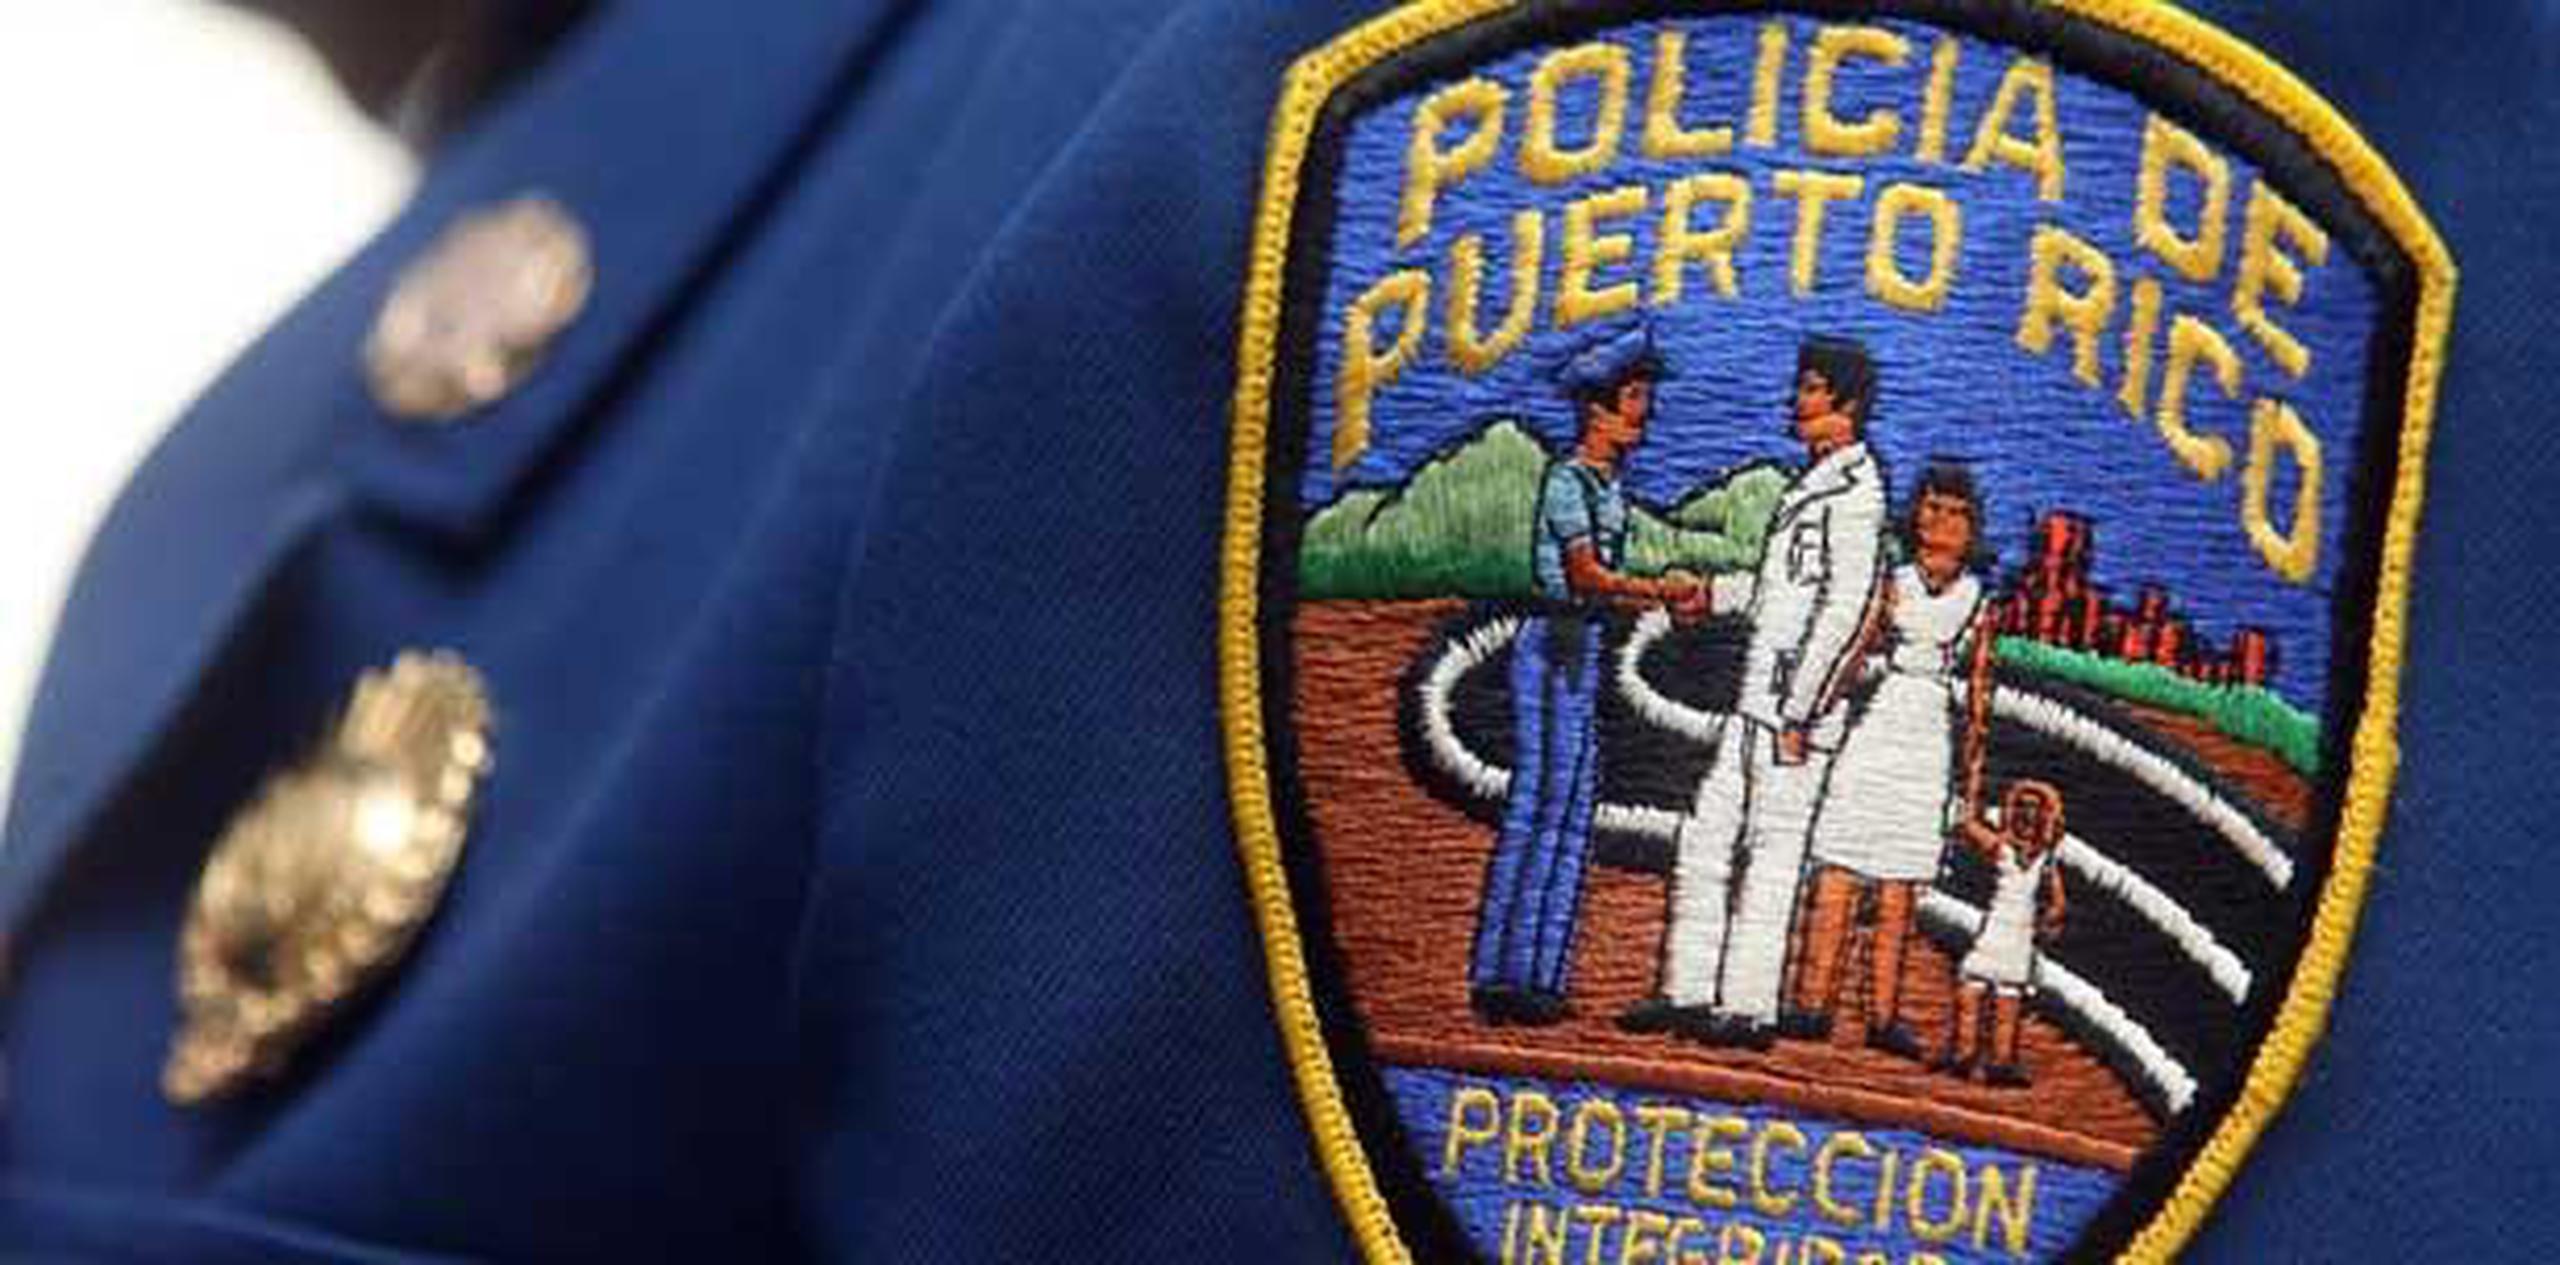 La Policía le solicitó las personas que si fueron víctimas de Rodríguez López, quien es sospechoso de otros asaltos en la zona metro de San Juan, se comunique al teléfono (787) 793-1234 extensión 3155 o al 343-2020, bajo estricta confidencialidad. (Archivo)